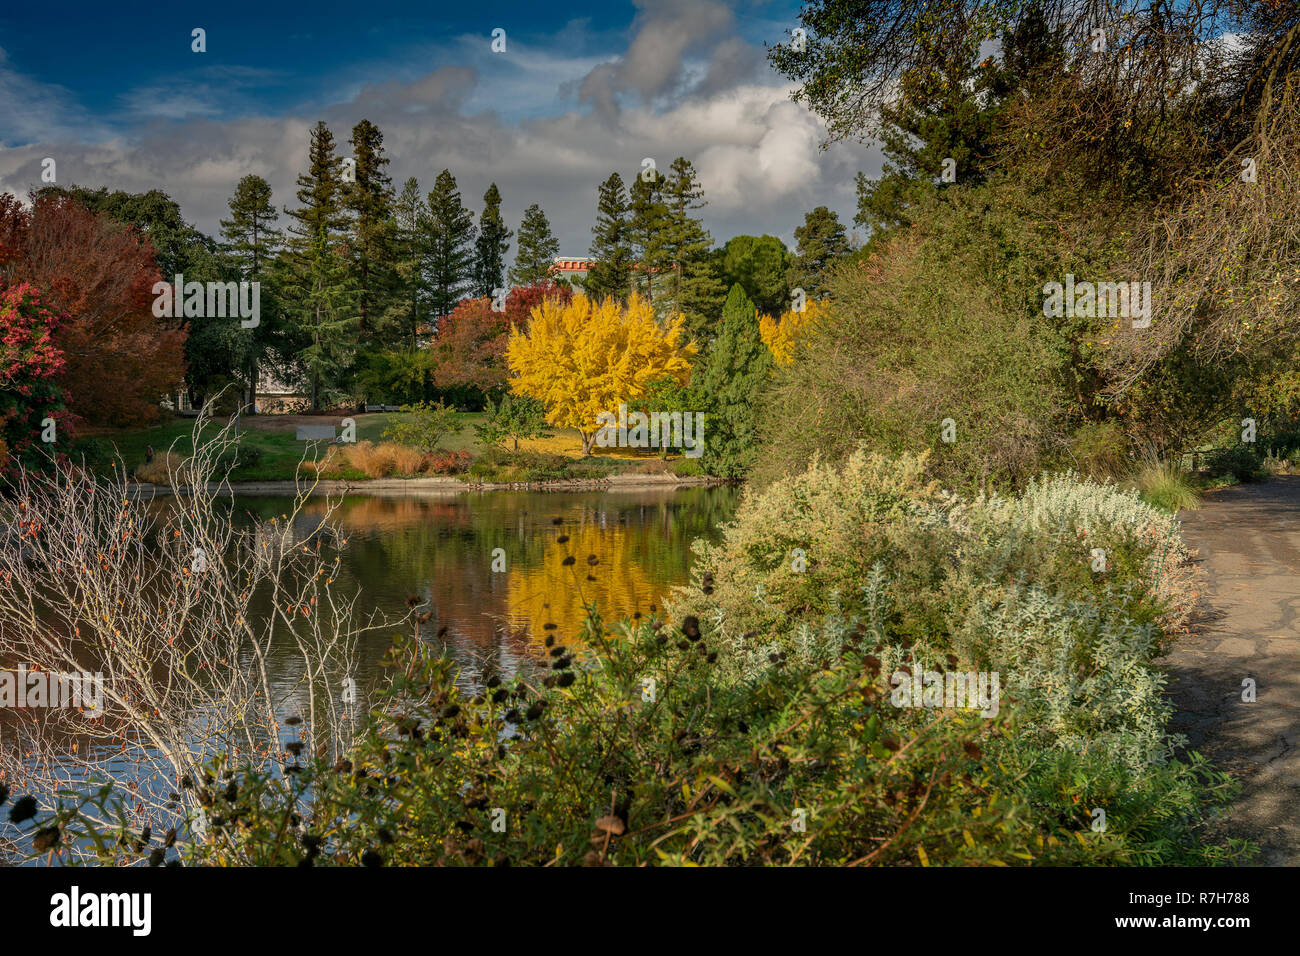 UC Davis arboretum colorés à l'automne sur un lac d'un overseing partiellement nuageux day Banque D'Images